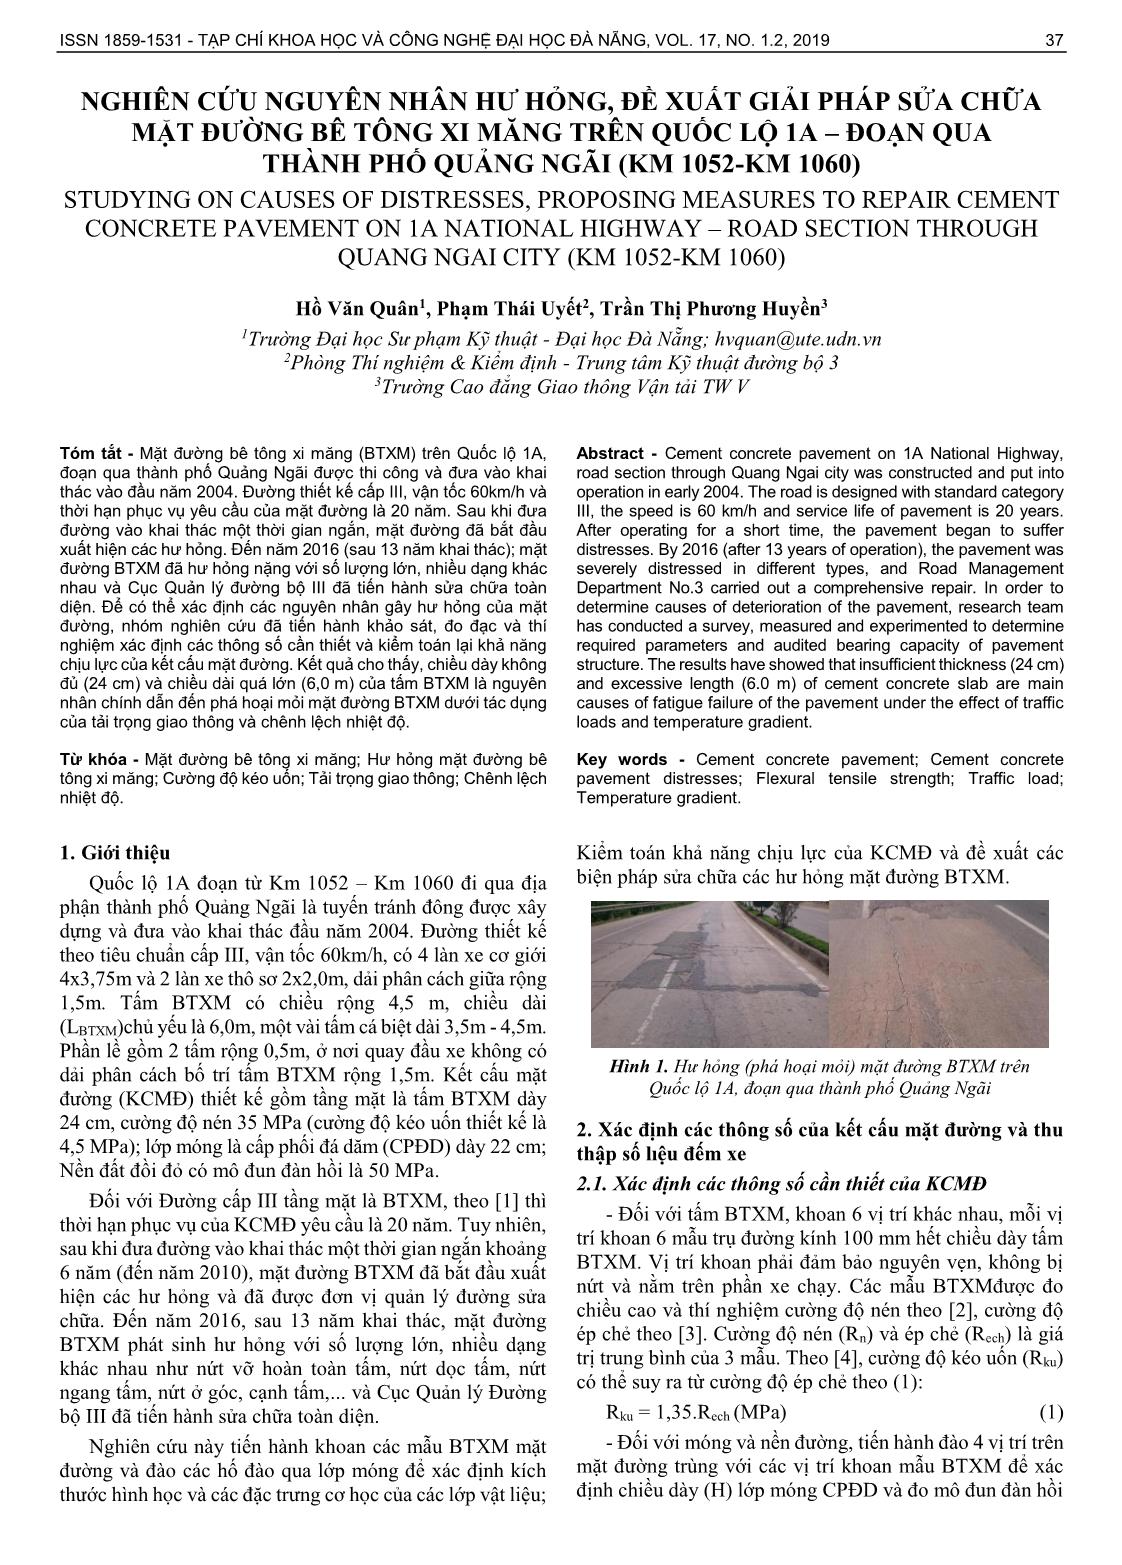 Nghiên cứu nguyên nhân hư hỏng, đề xuất giải pháp sửa chữa mặt đường bê tông xi măng trên quốc lộ 1A – đoạn qua thành phố Quảng Ngãi (km 1052-km 1060) trang 1